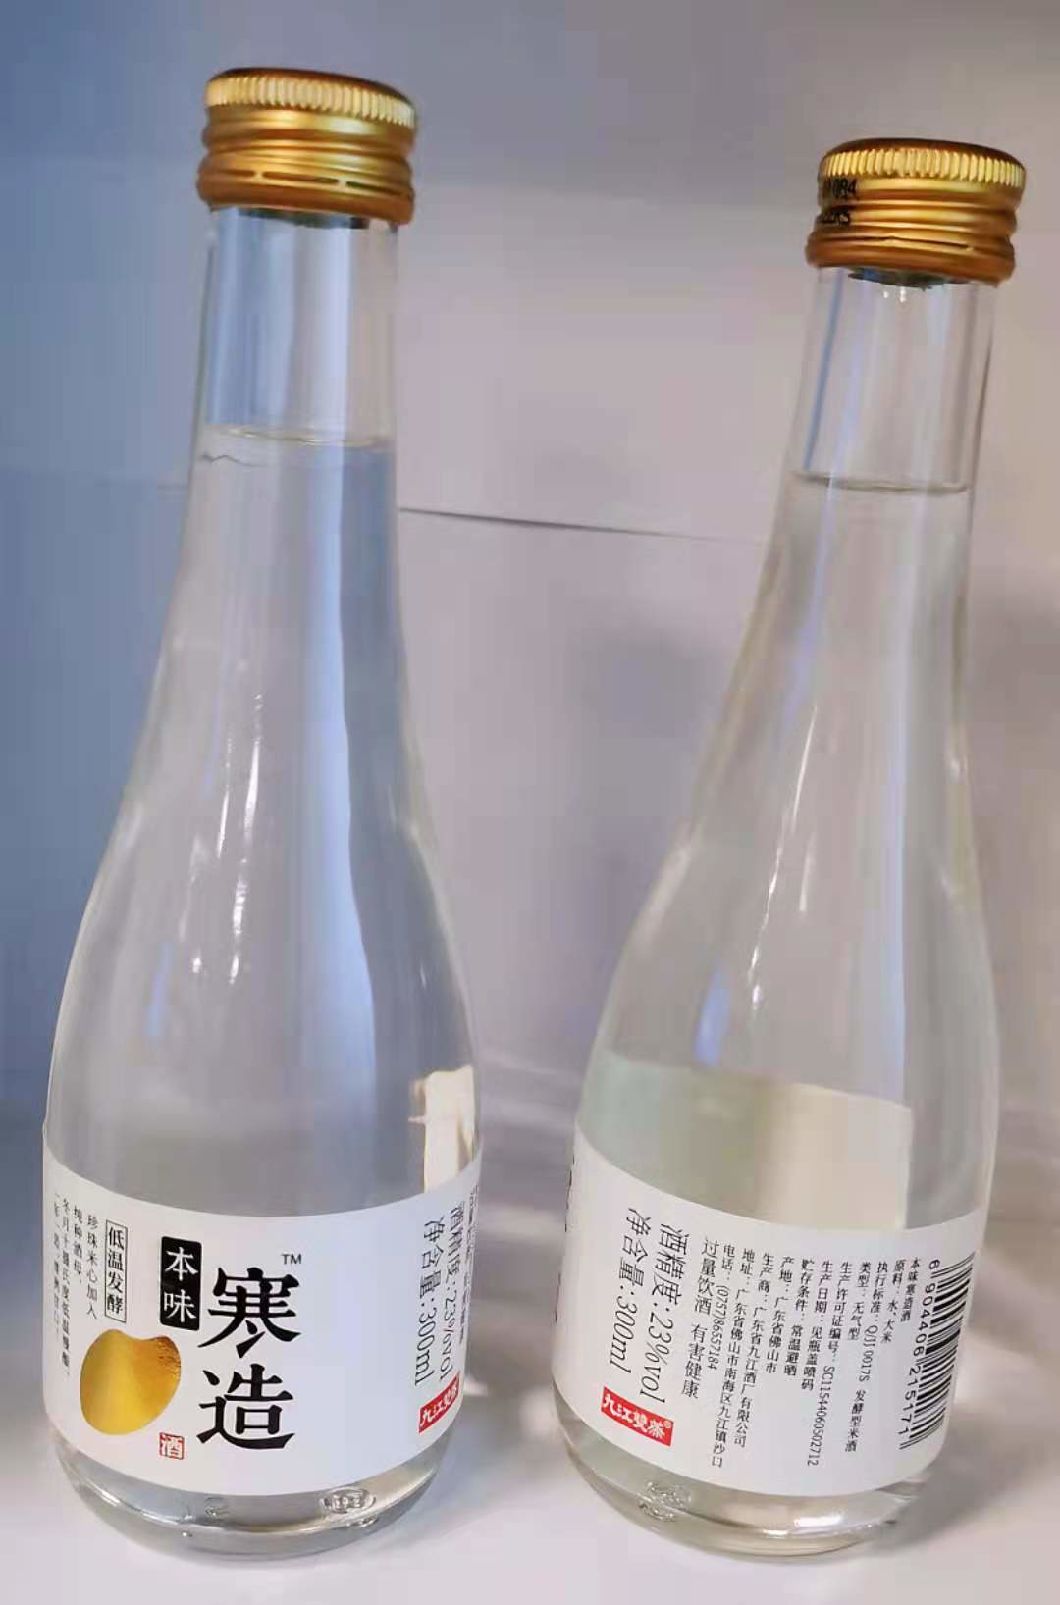 Custom Printed Self Adhesive Vinyl Glass Bottle Packaging Roll Waterproof Label Sticker